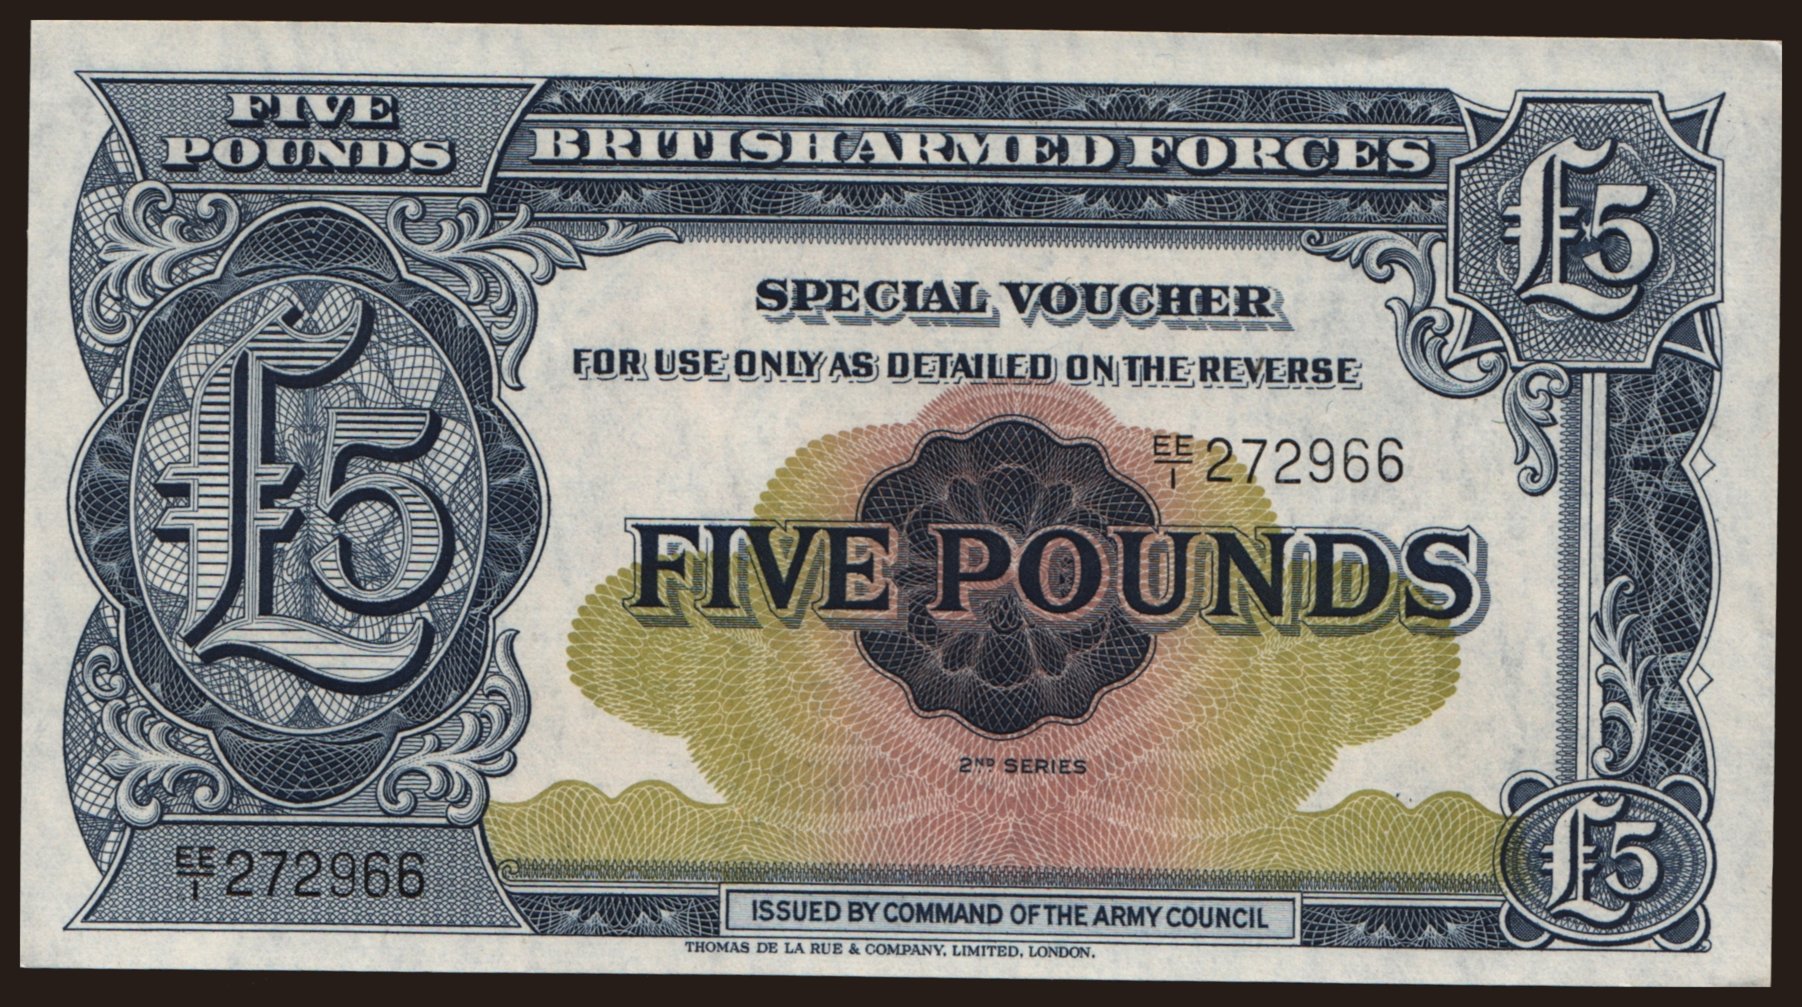 BAF, 5 pounds, 1958